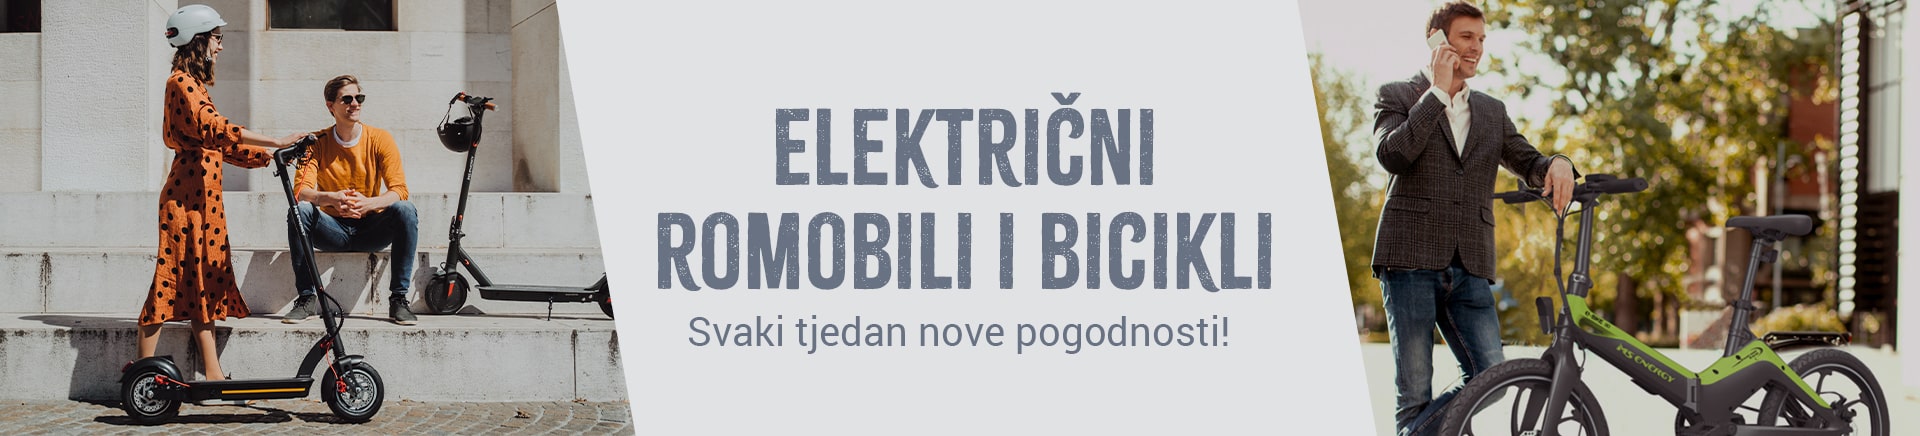 Električni romobili, skuteri i bicikli